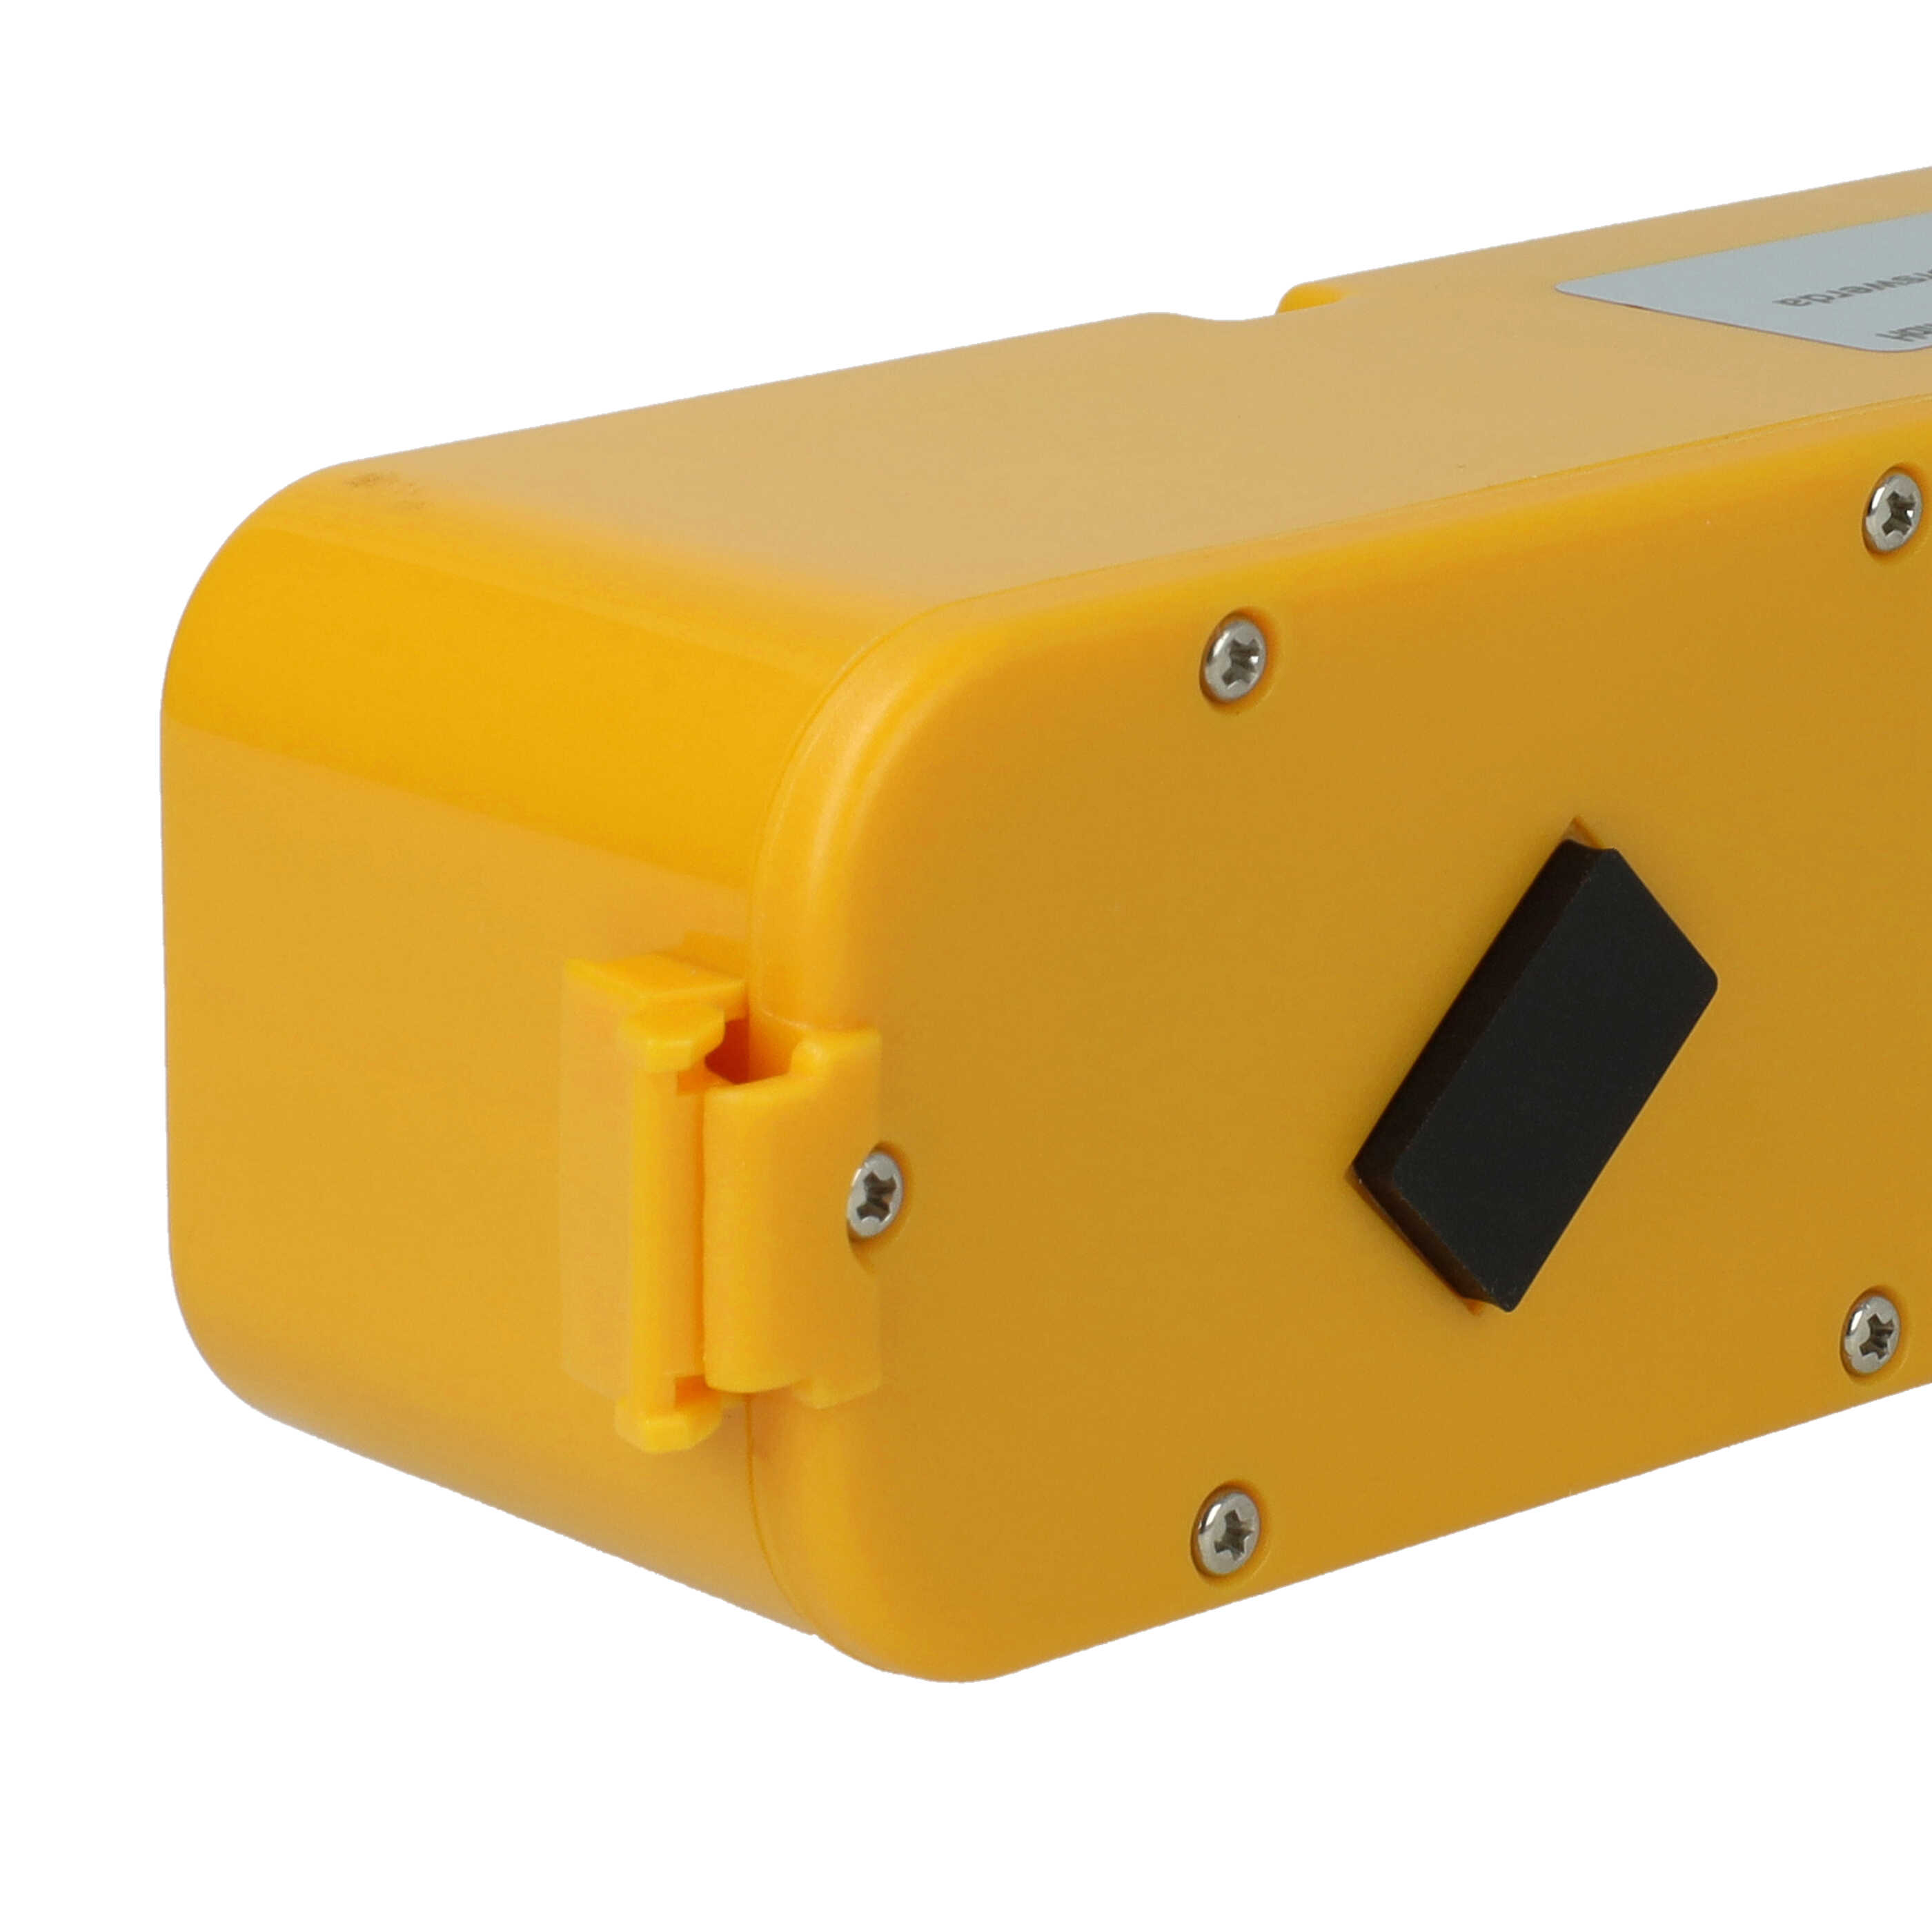 Batería reemplaza APS 4905, 11700, 17373 para robot doméstico iRobot - 3500 mAh 14,4 V NiMH amarillo